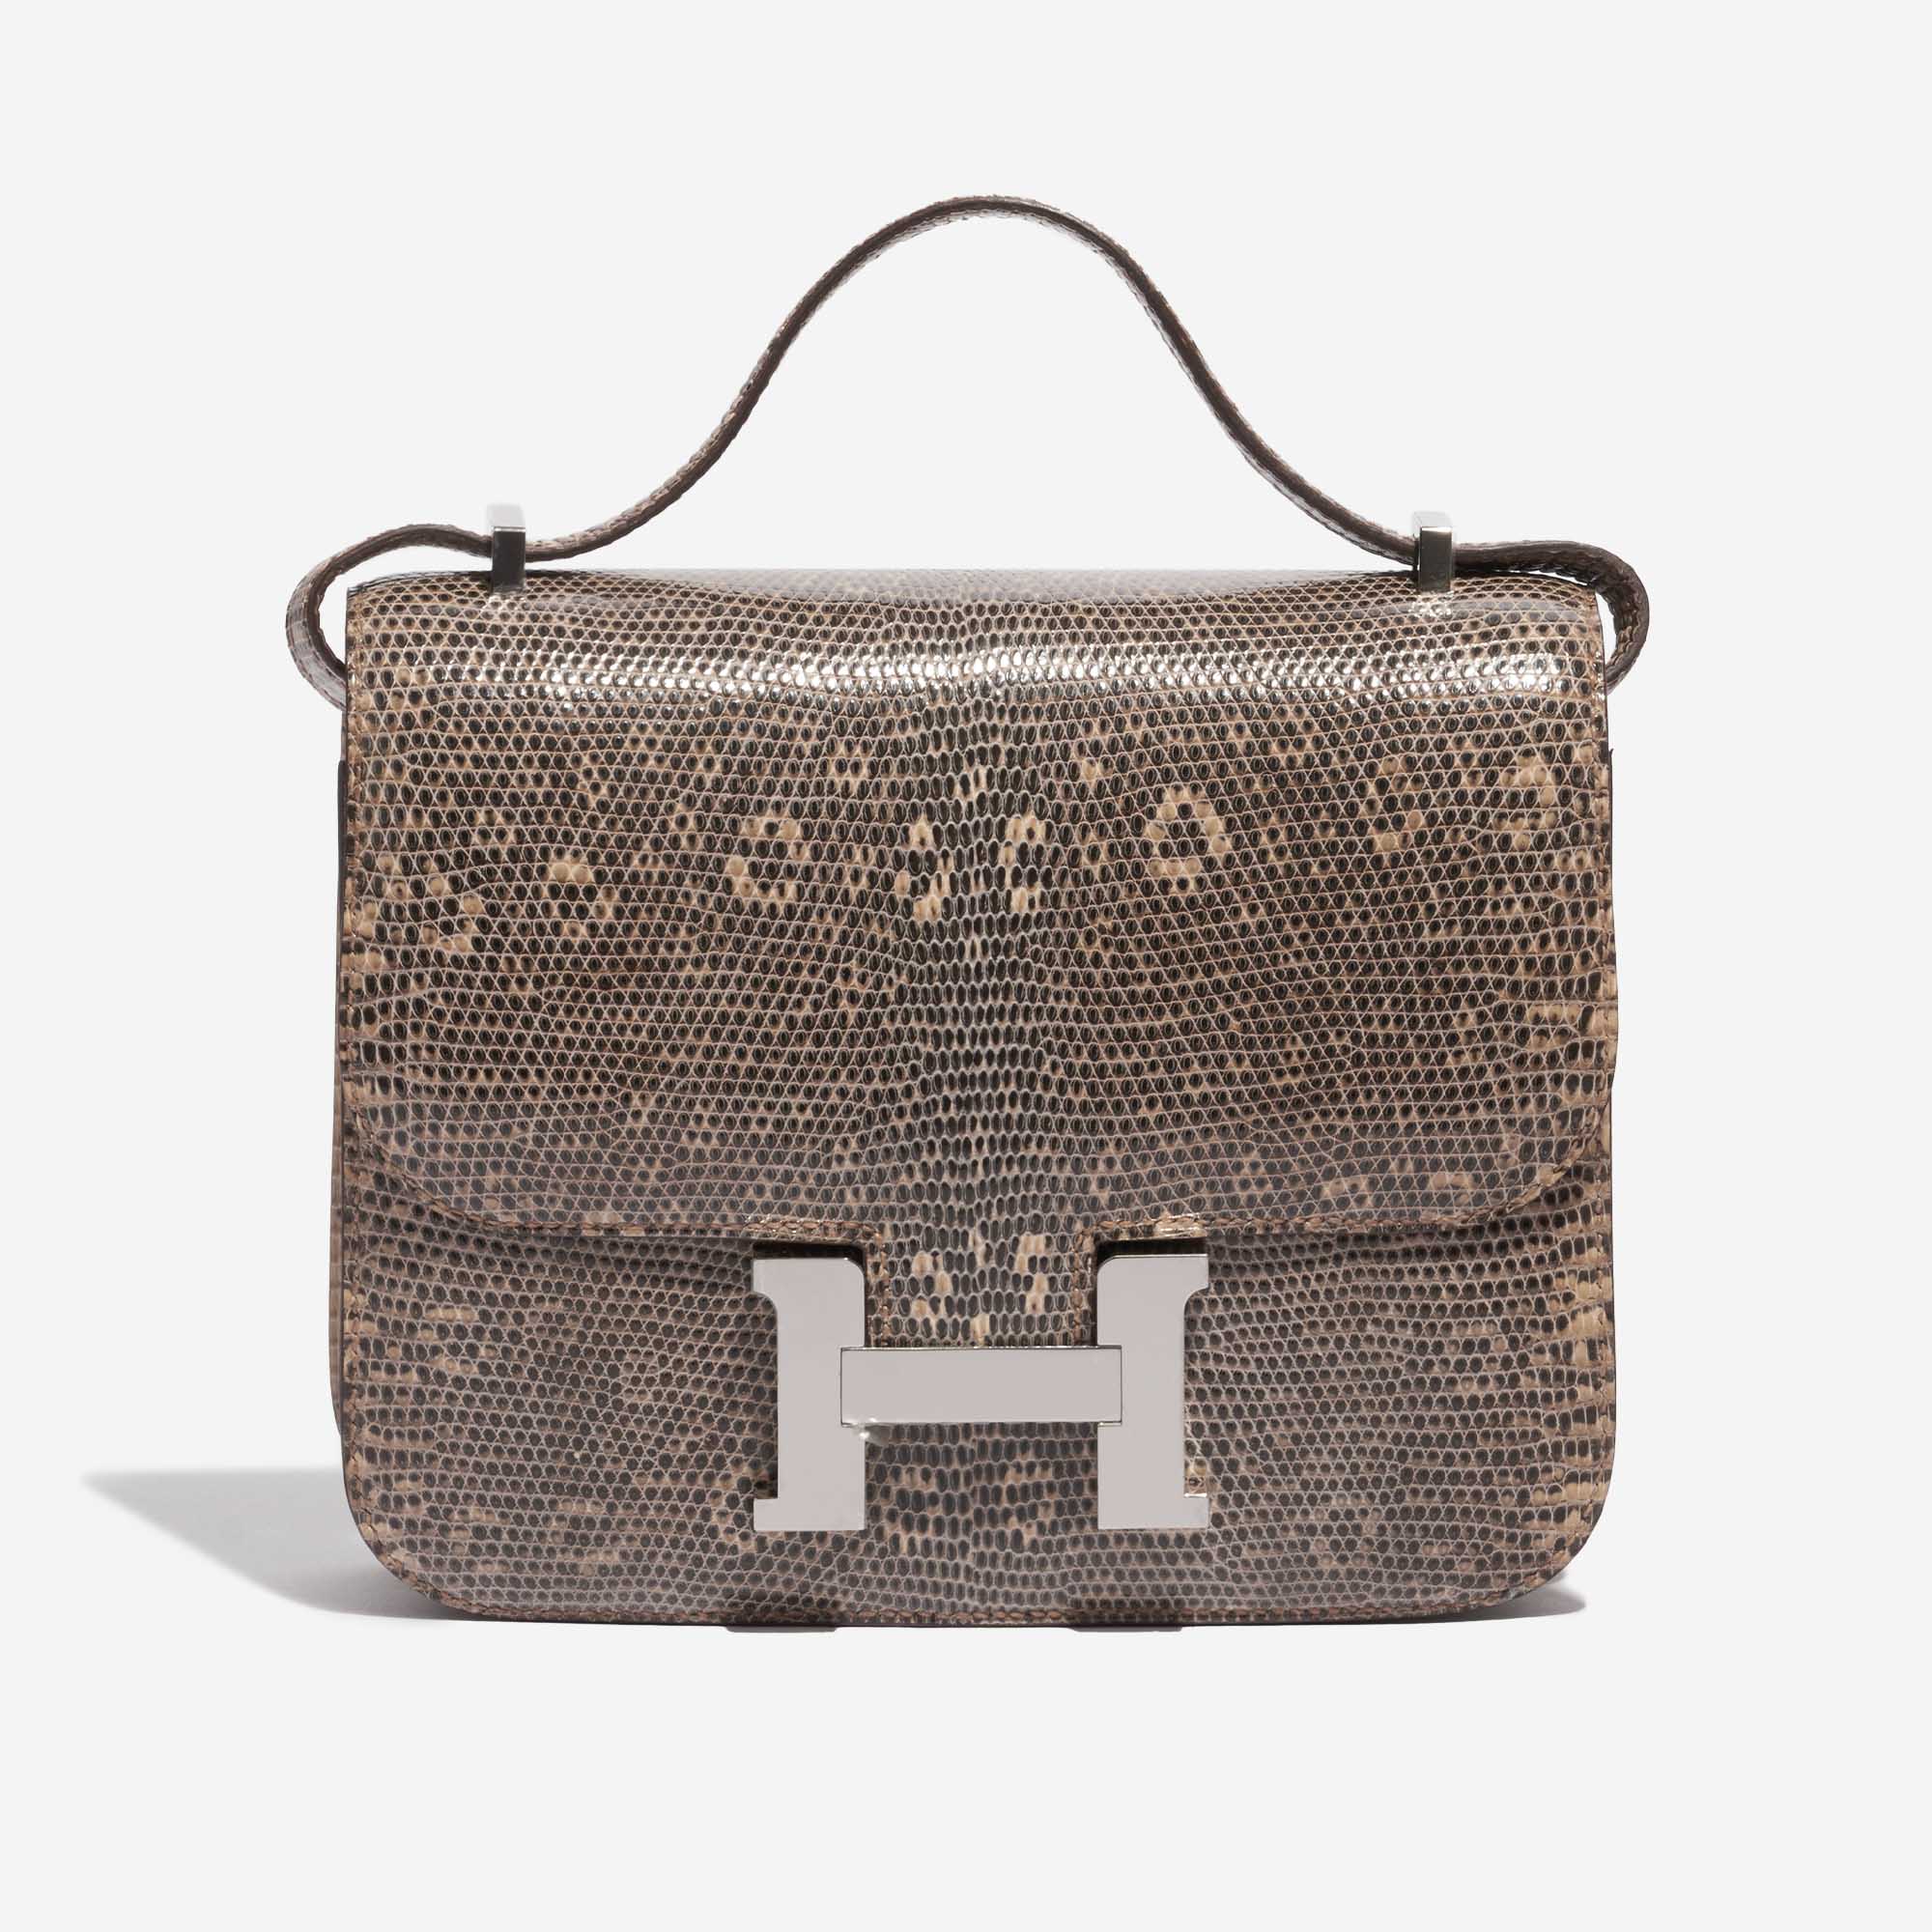 Pre-owned Hermès Tasche Constance 18 Salvator Lizard Desert Ombré Beige, Brown Front | Verkaufen Sie Ihre Designer-Tasche auf Saclab.com